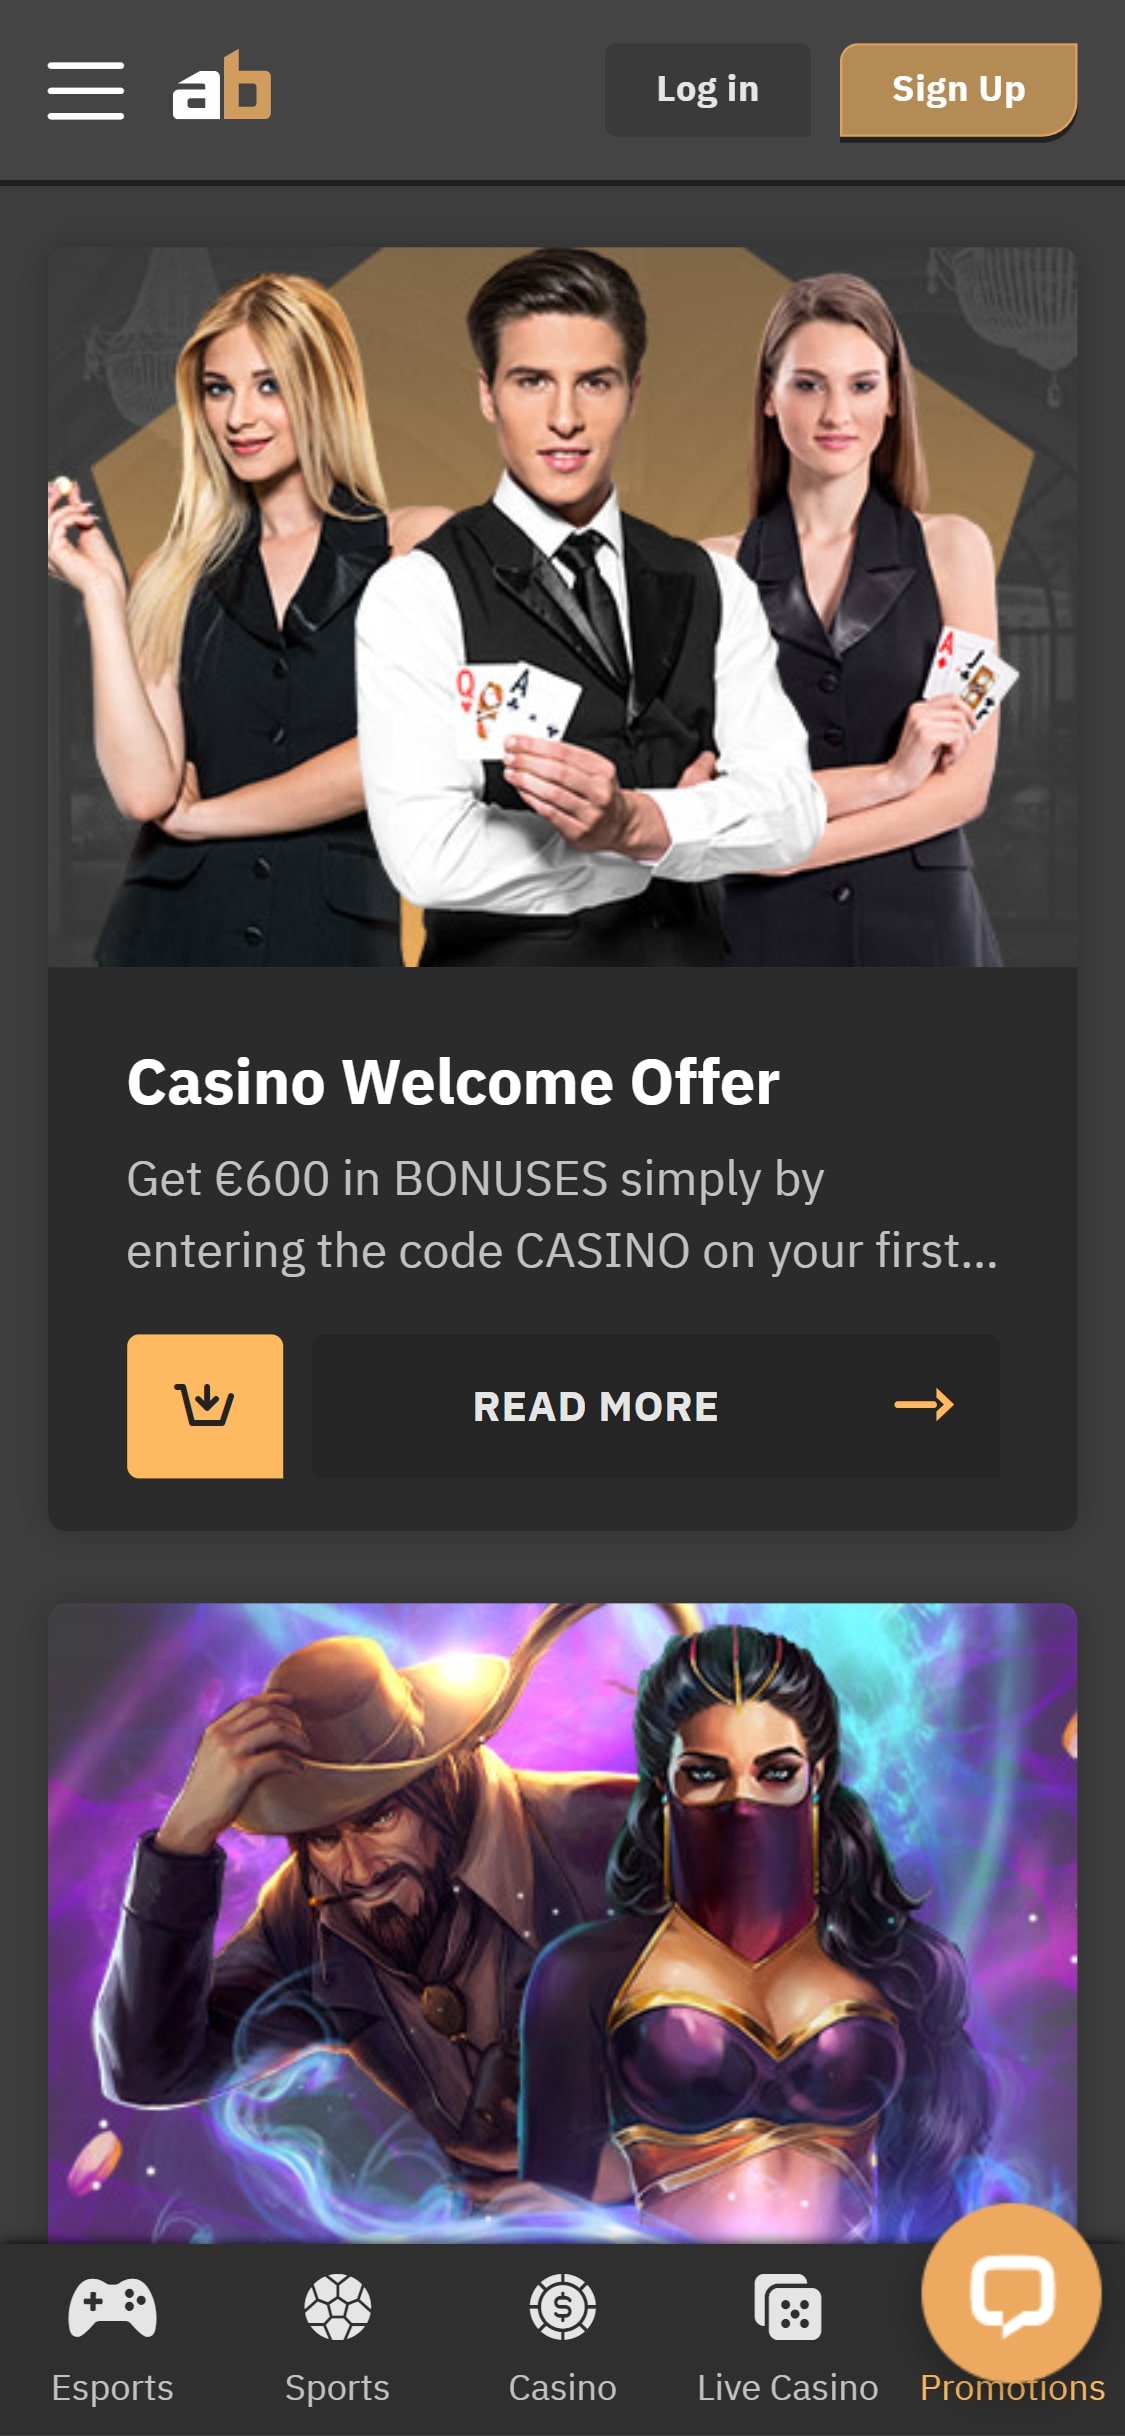 Arcanebet Casino Mobile No Deposit Bonus Review